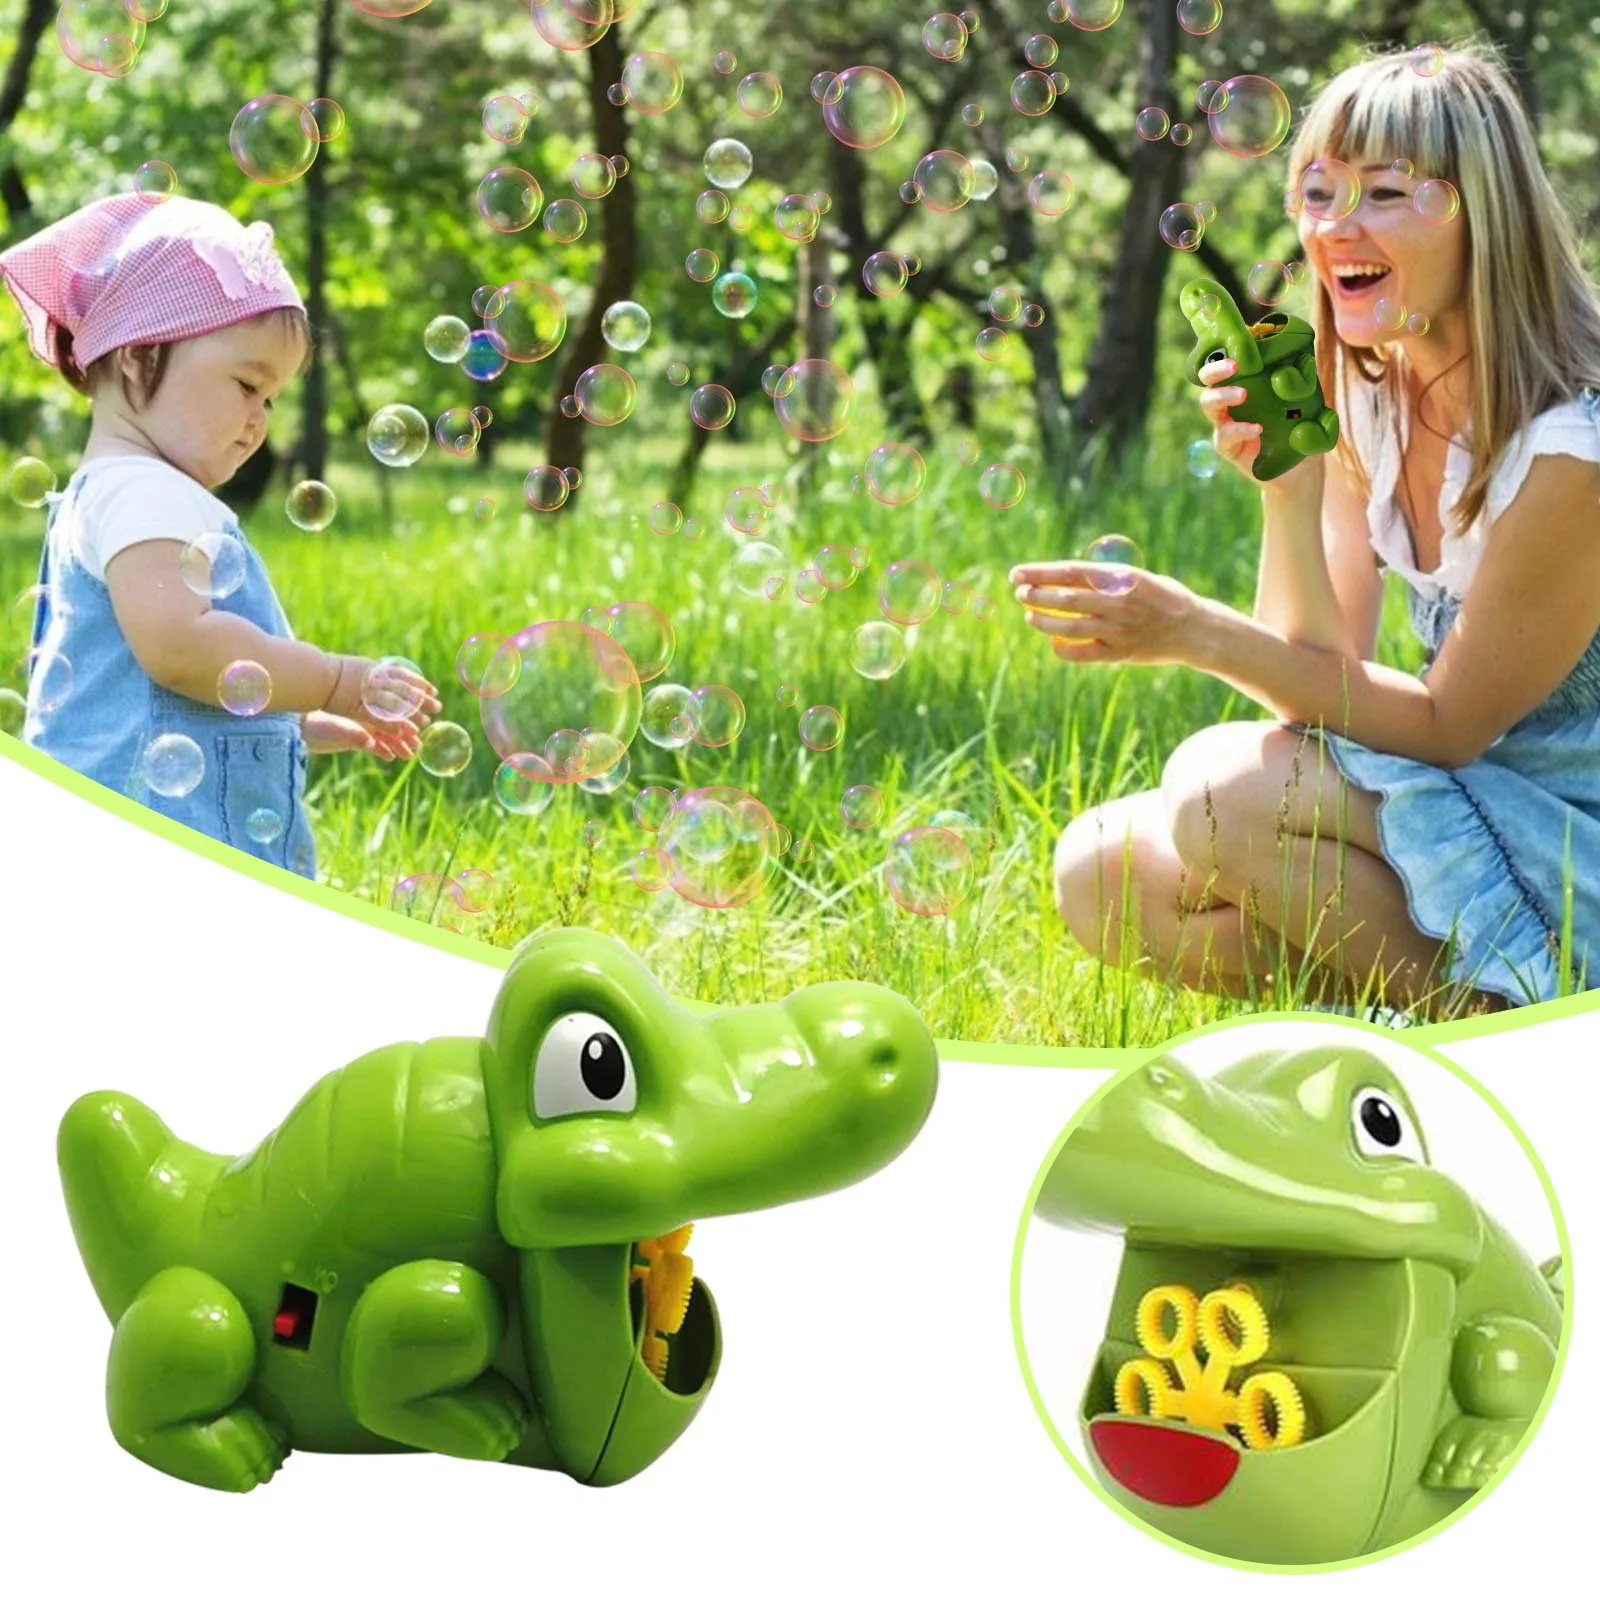 

Children's toy bubble machine, automatic bubble blowing, portable bubble machine 1000 bubbles per minute млне пђзѬи 40*